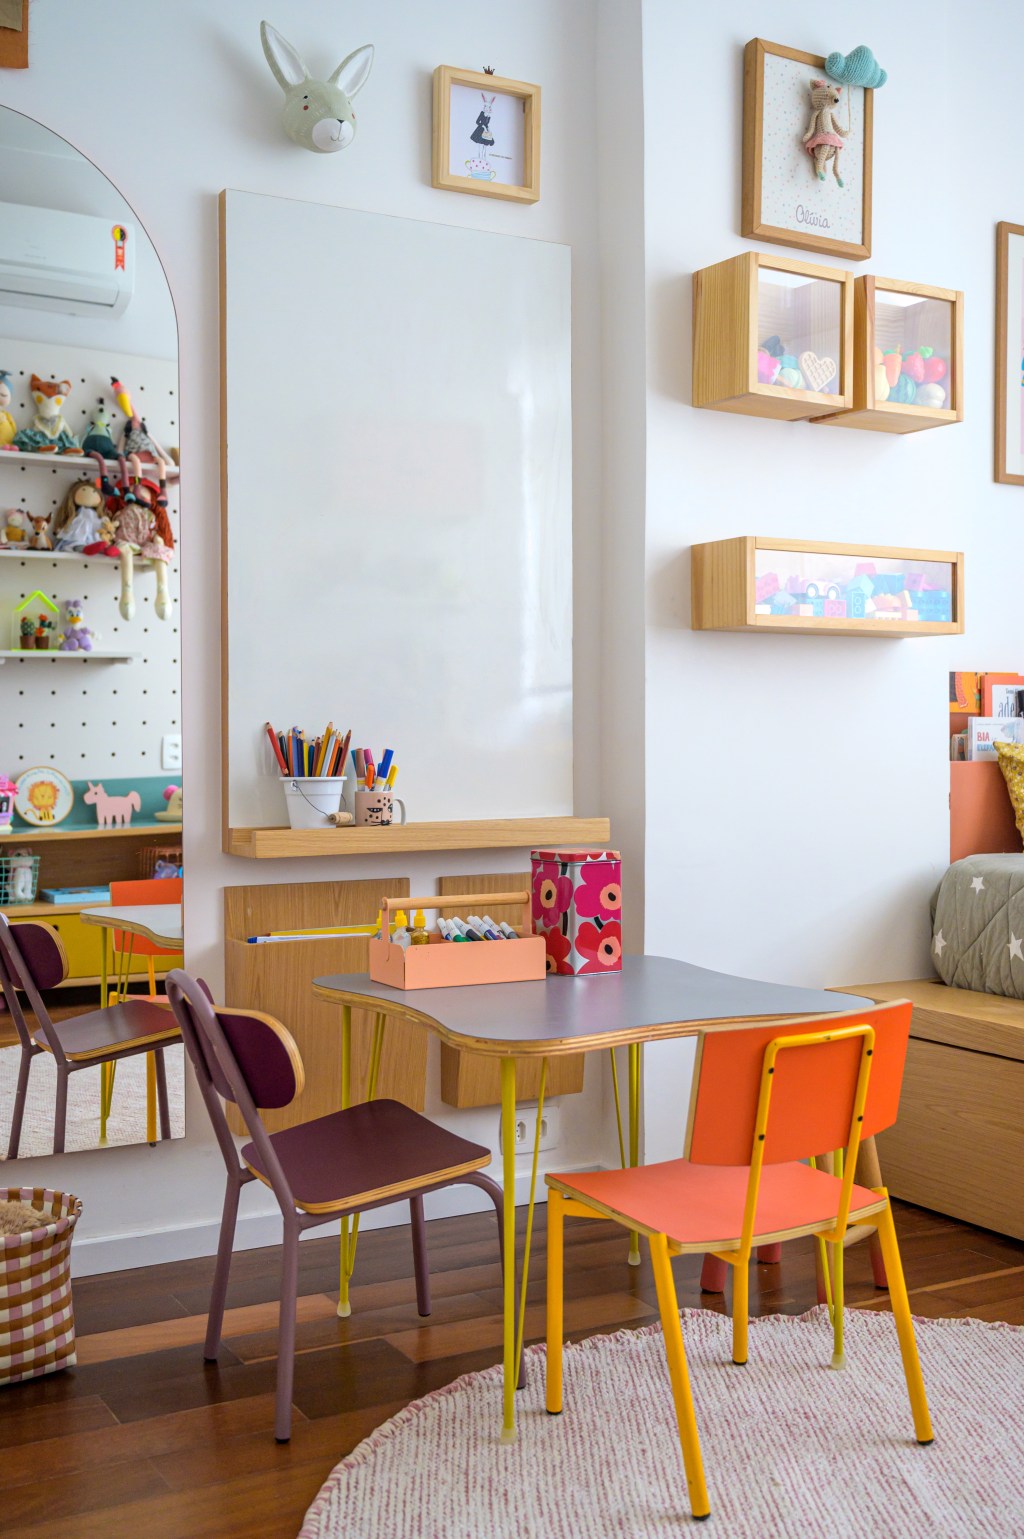 Pilar estrutural e tijolos aparentes dão o tom deste apê de 115 m². Projeto de Ana Neri. Na foto, quarto infantil com mesa, cadeiras e espelho.